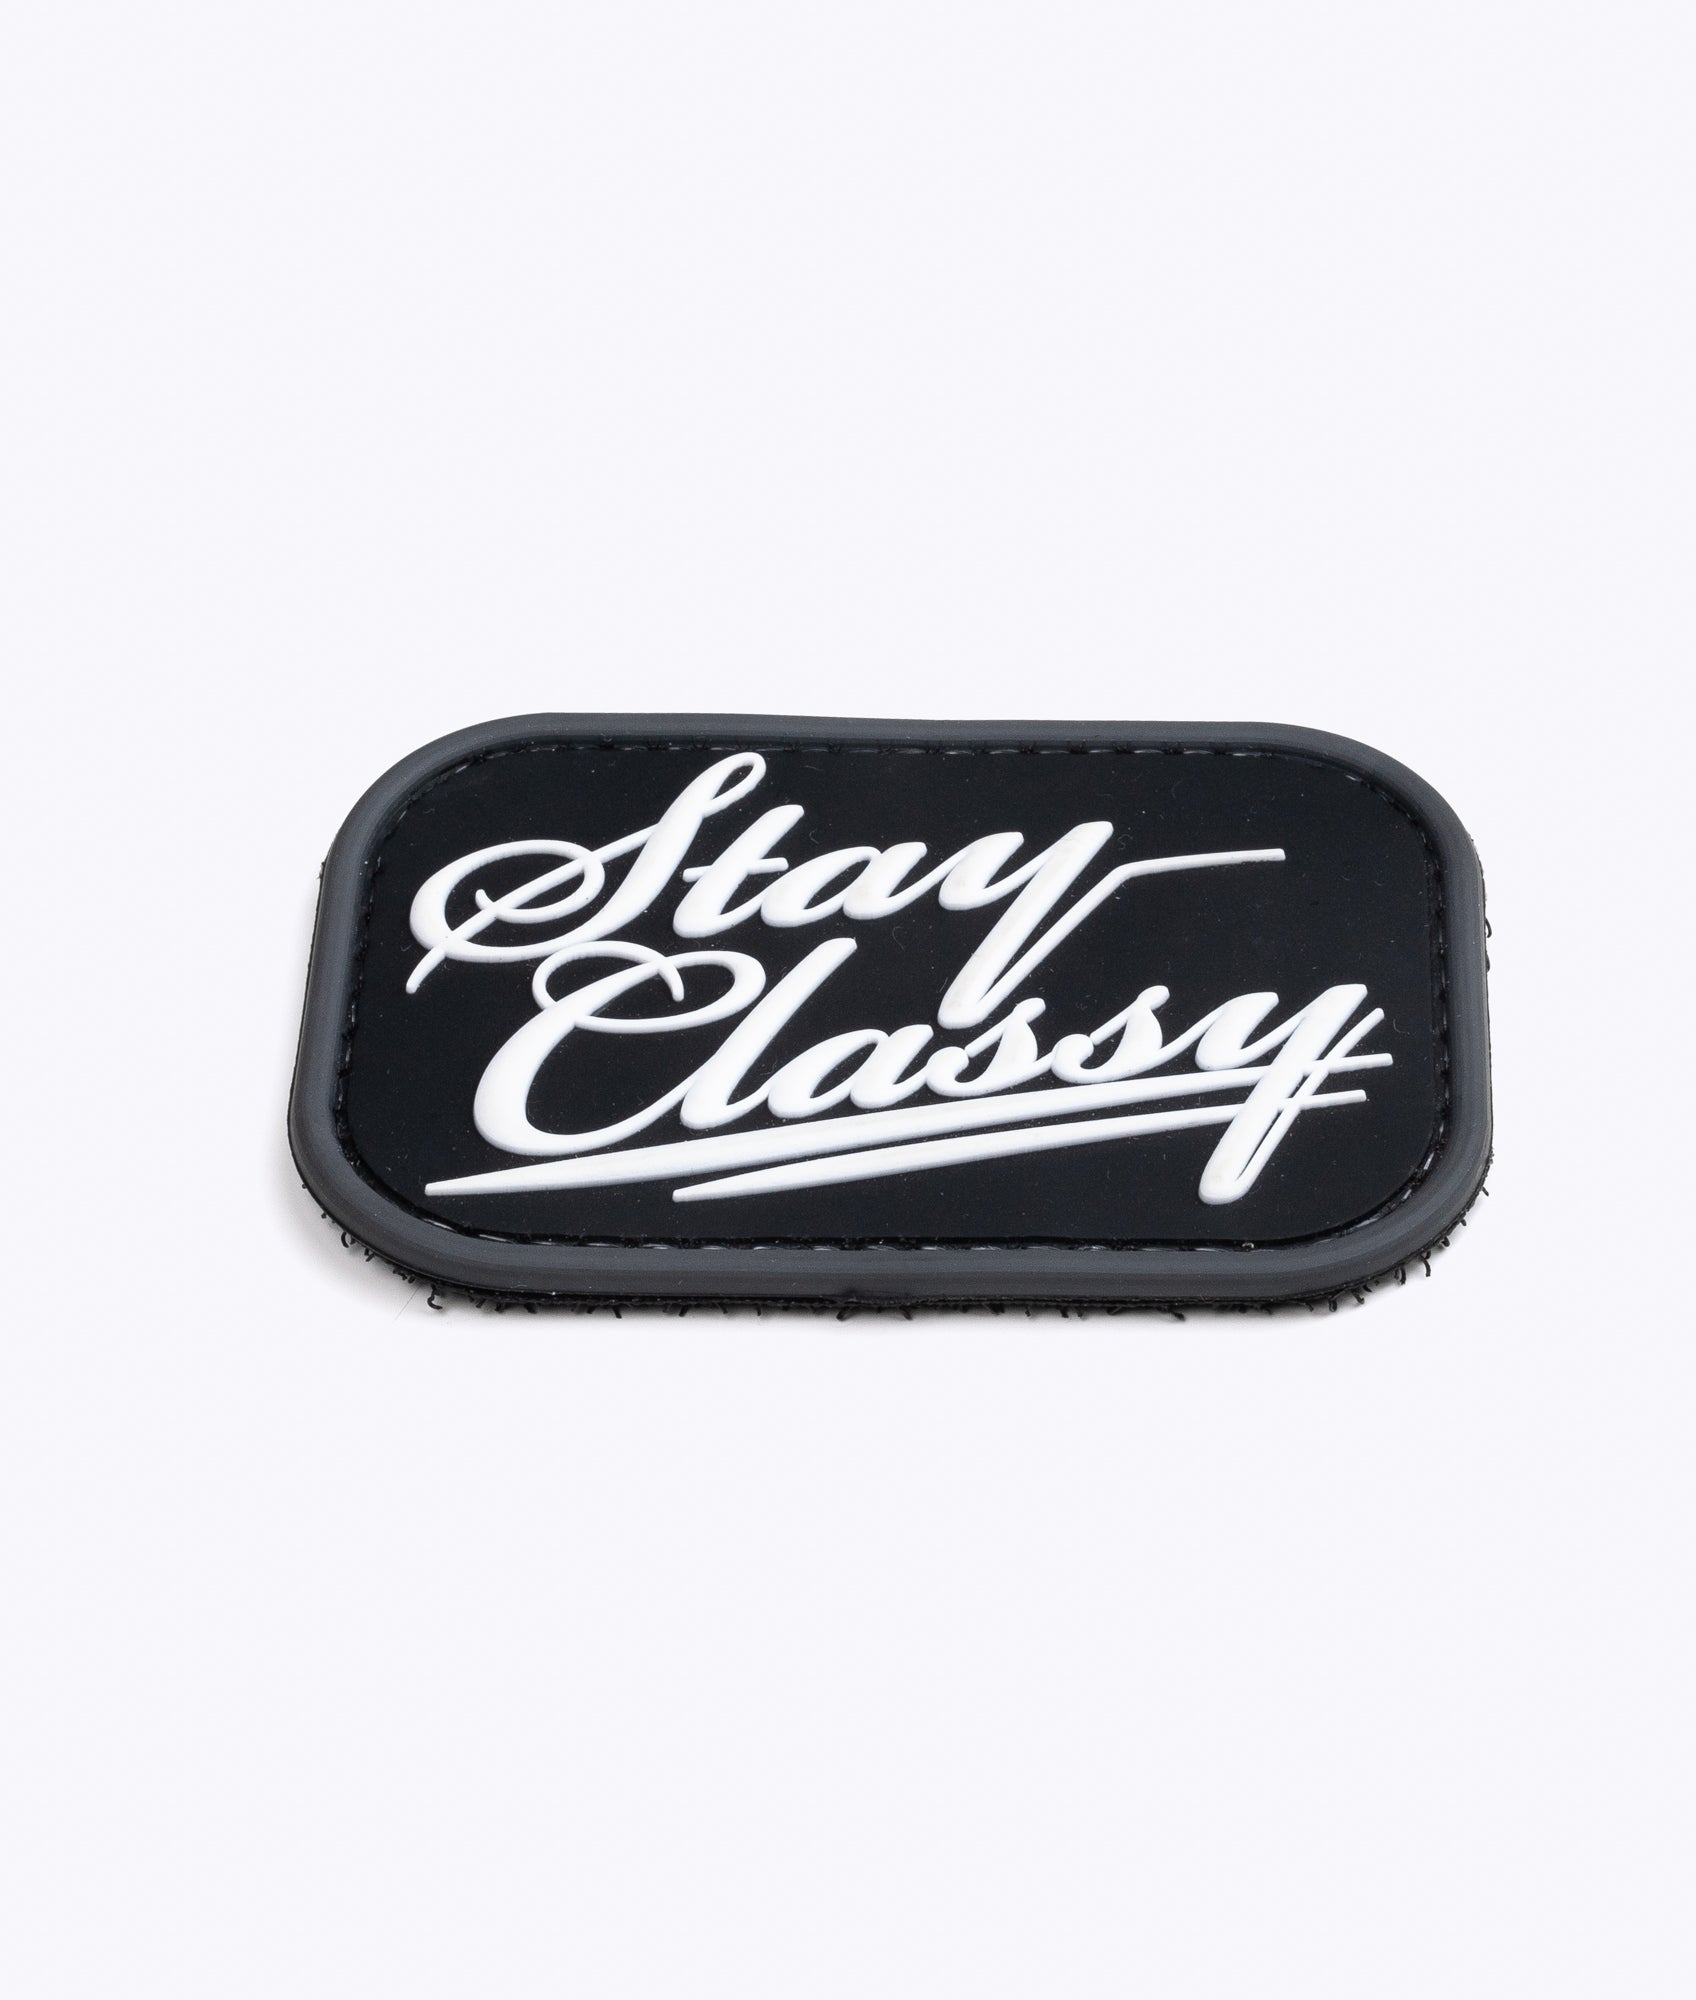 'Stay Classy' PVC Patch